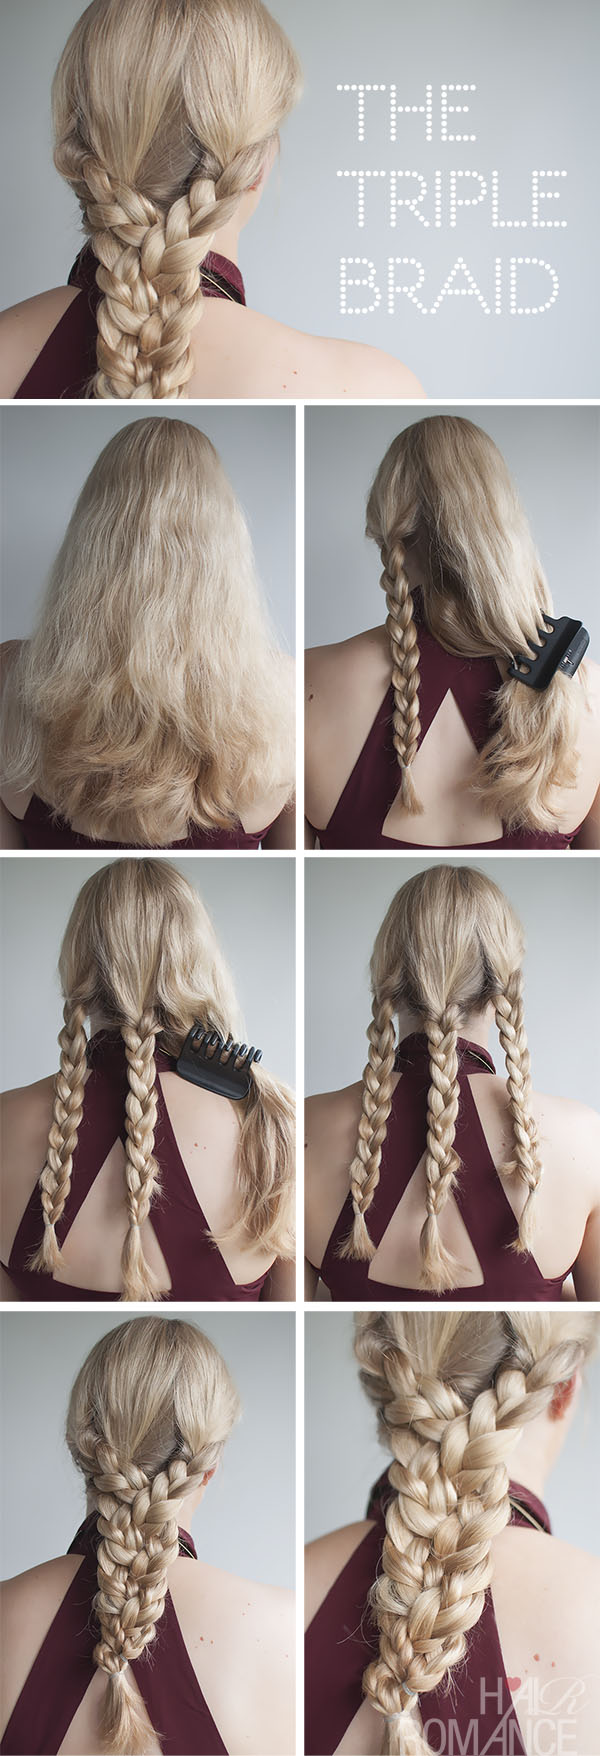 Hair-Romance-triple-braid-tutorial